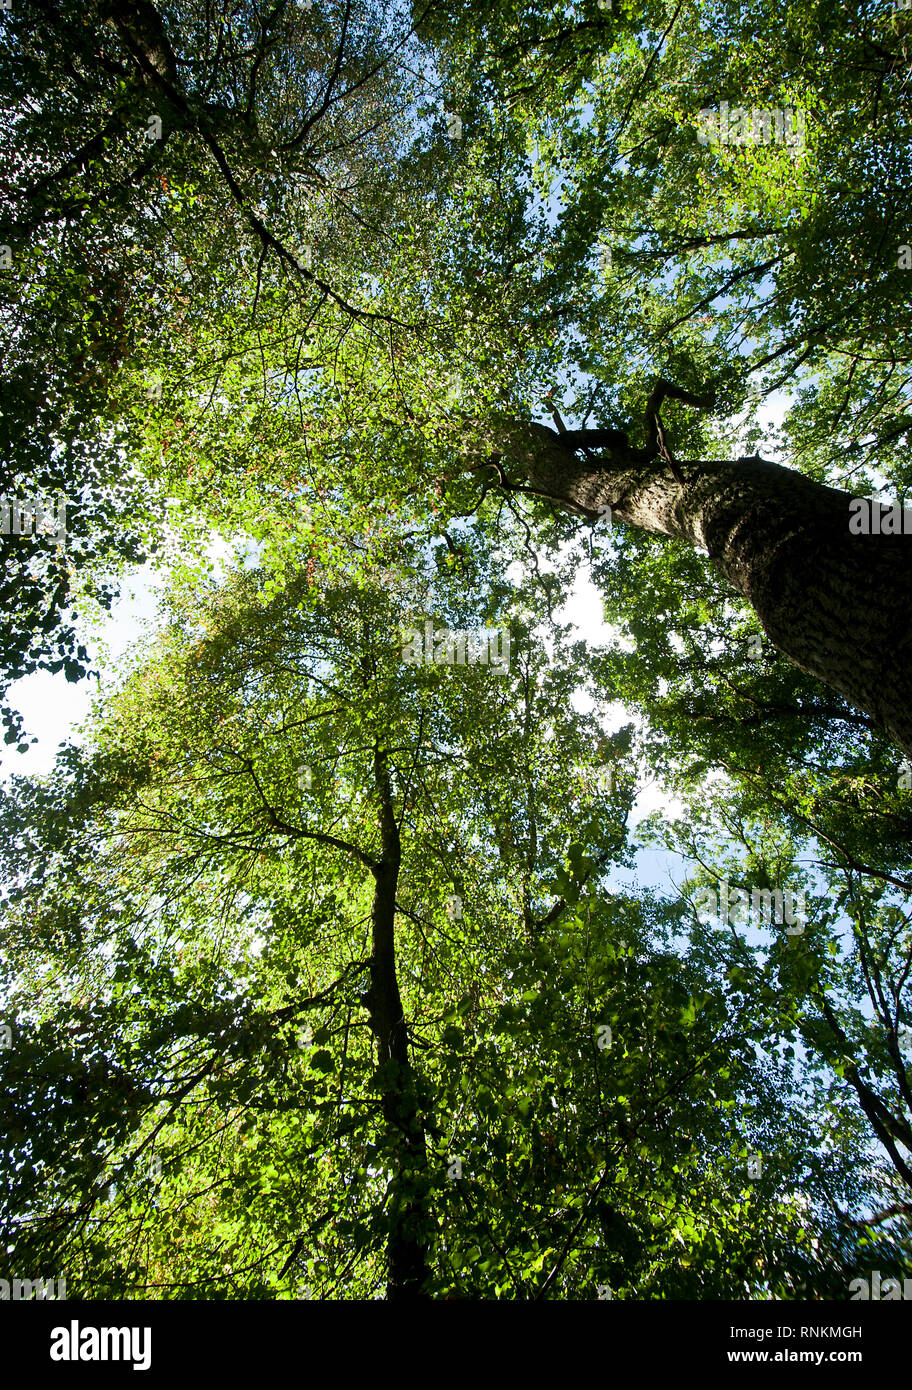 Tiros de ángulo bajo de árboles en un bosque con follaje verde, maleza en el bosque estatal de Raismes-Saint-Amand-Wallers, reserva natural de la SC Foto de stock